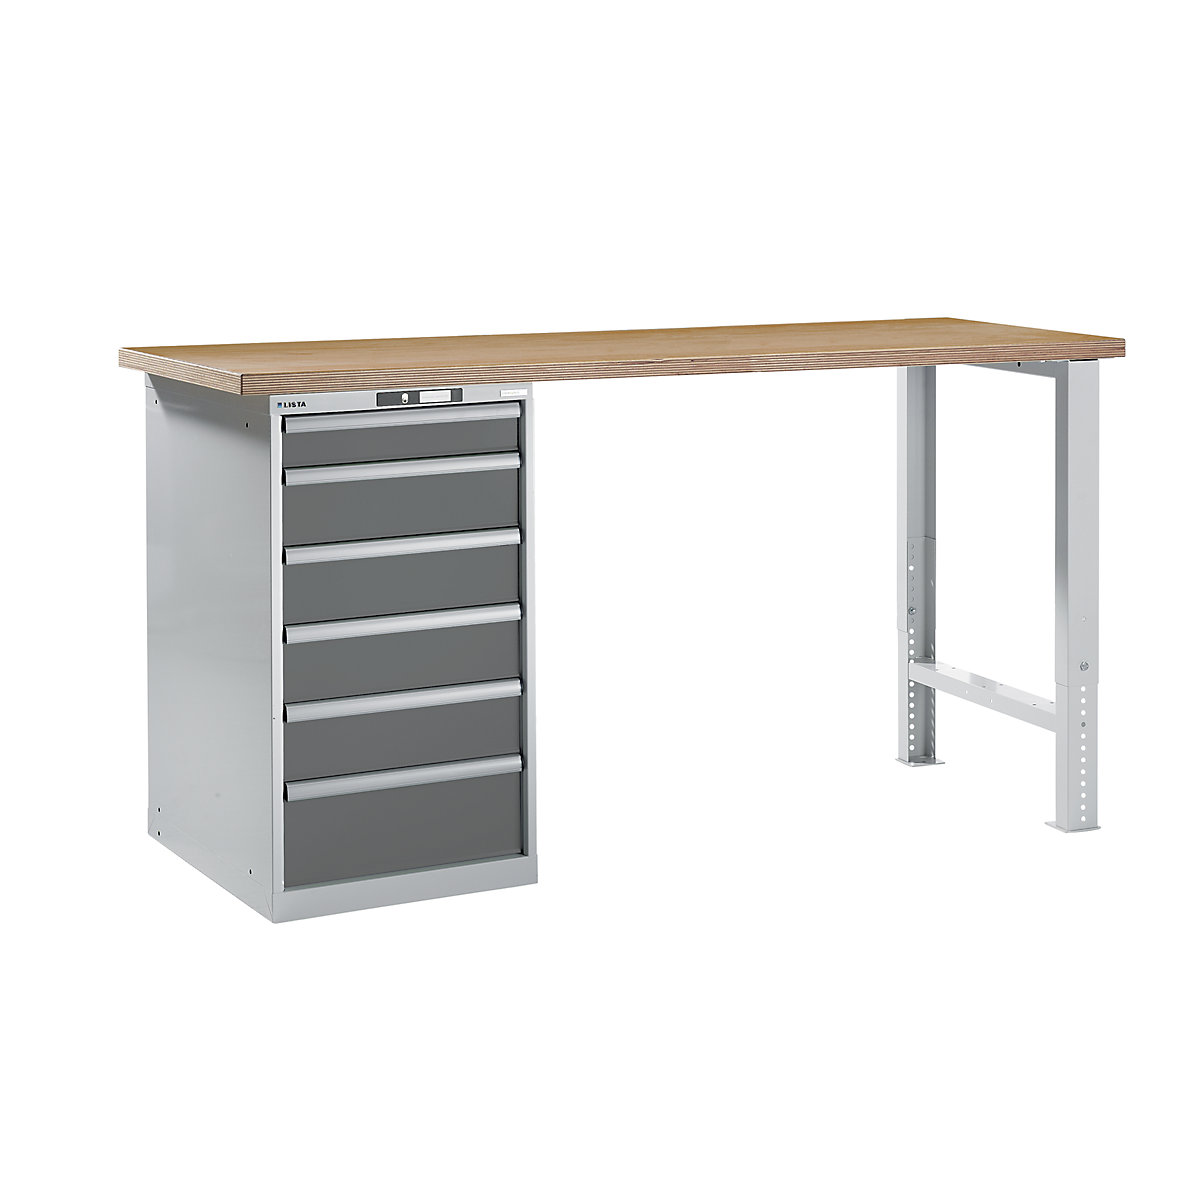 LISTA – Radna klupa kao modularni sustav, visina 1040 mm, ormar za postavljanje ispod stola, 6 ladice, u sivoj metalik boji, širina stola 2000 mm